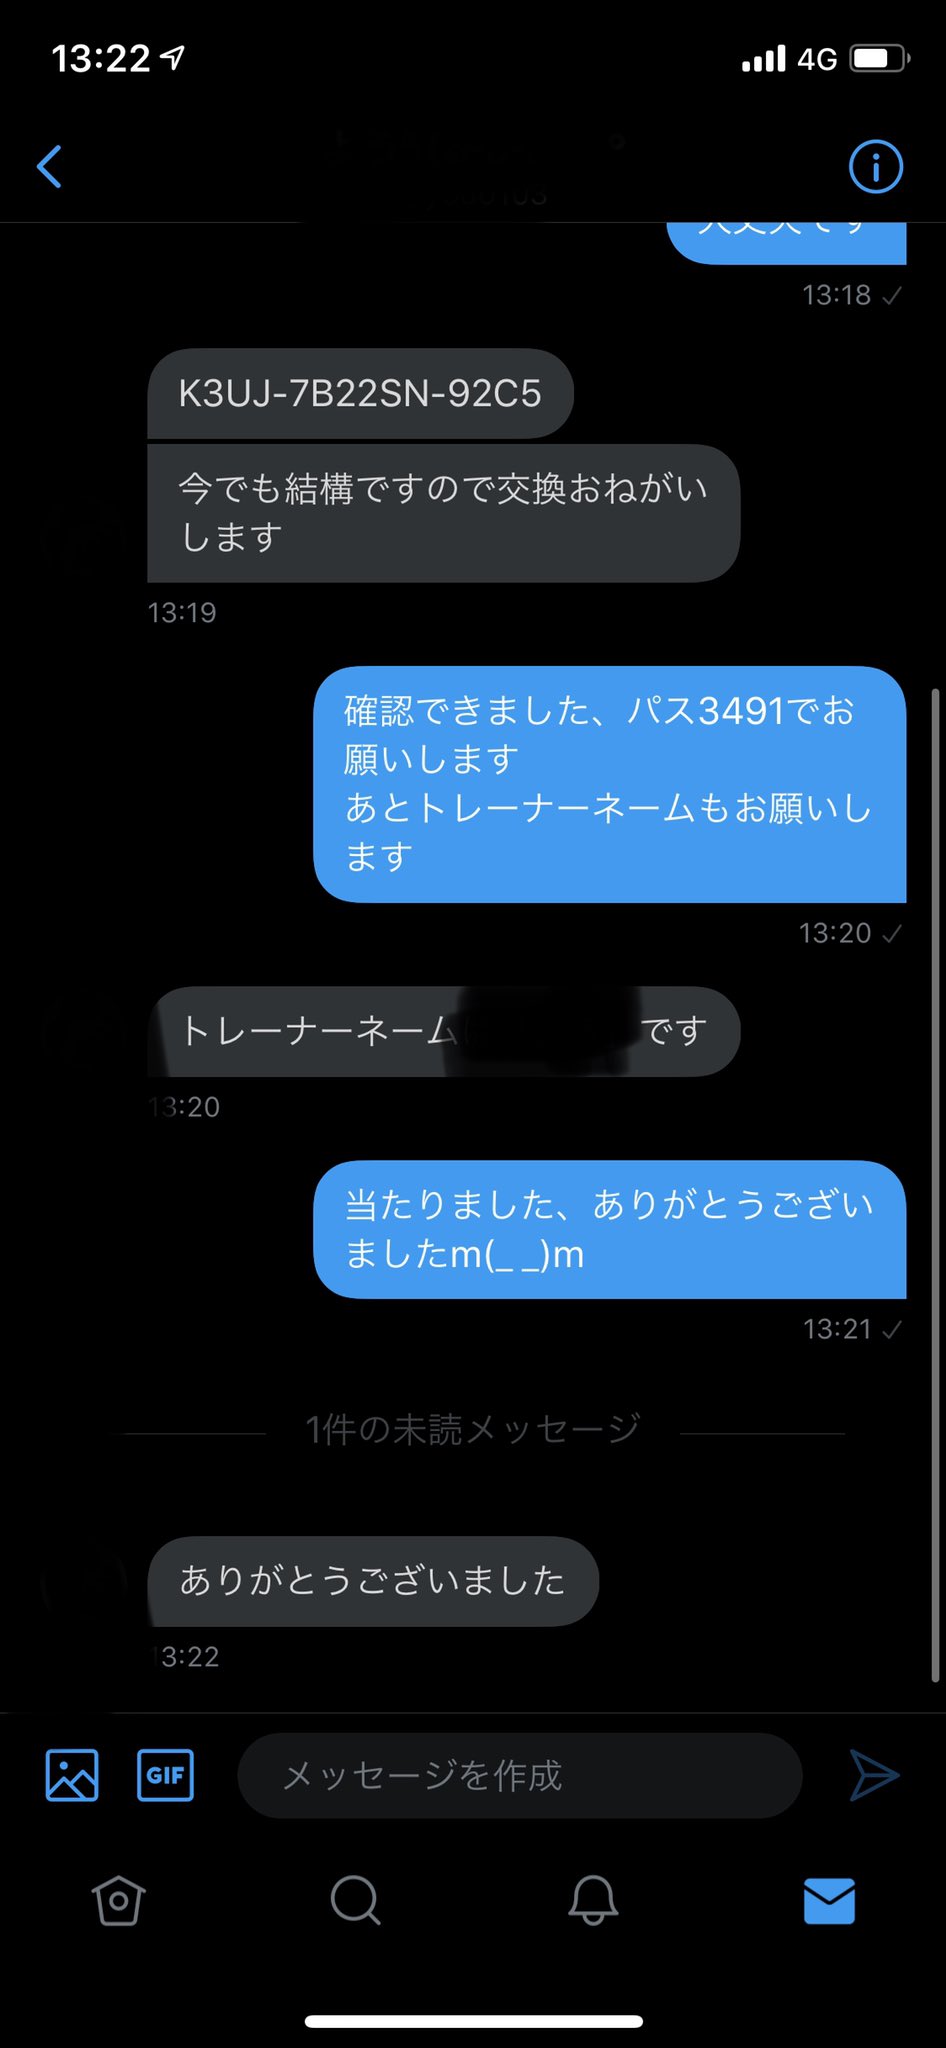 剣盾ソード シールド海外産6vメタモン500円 6v Twitter